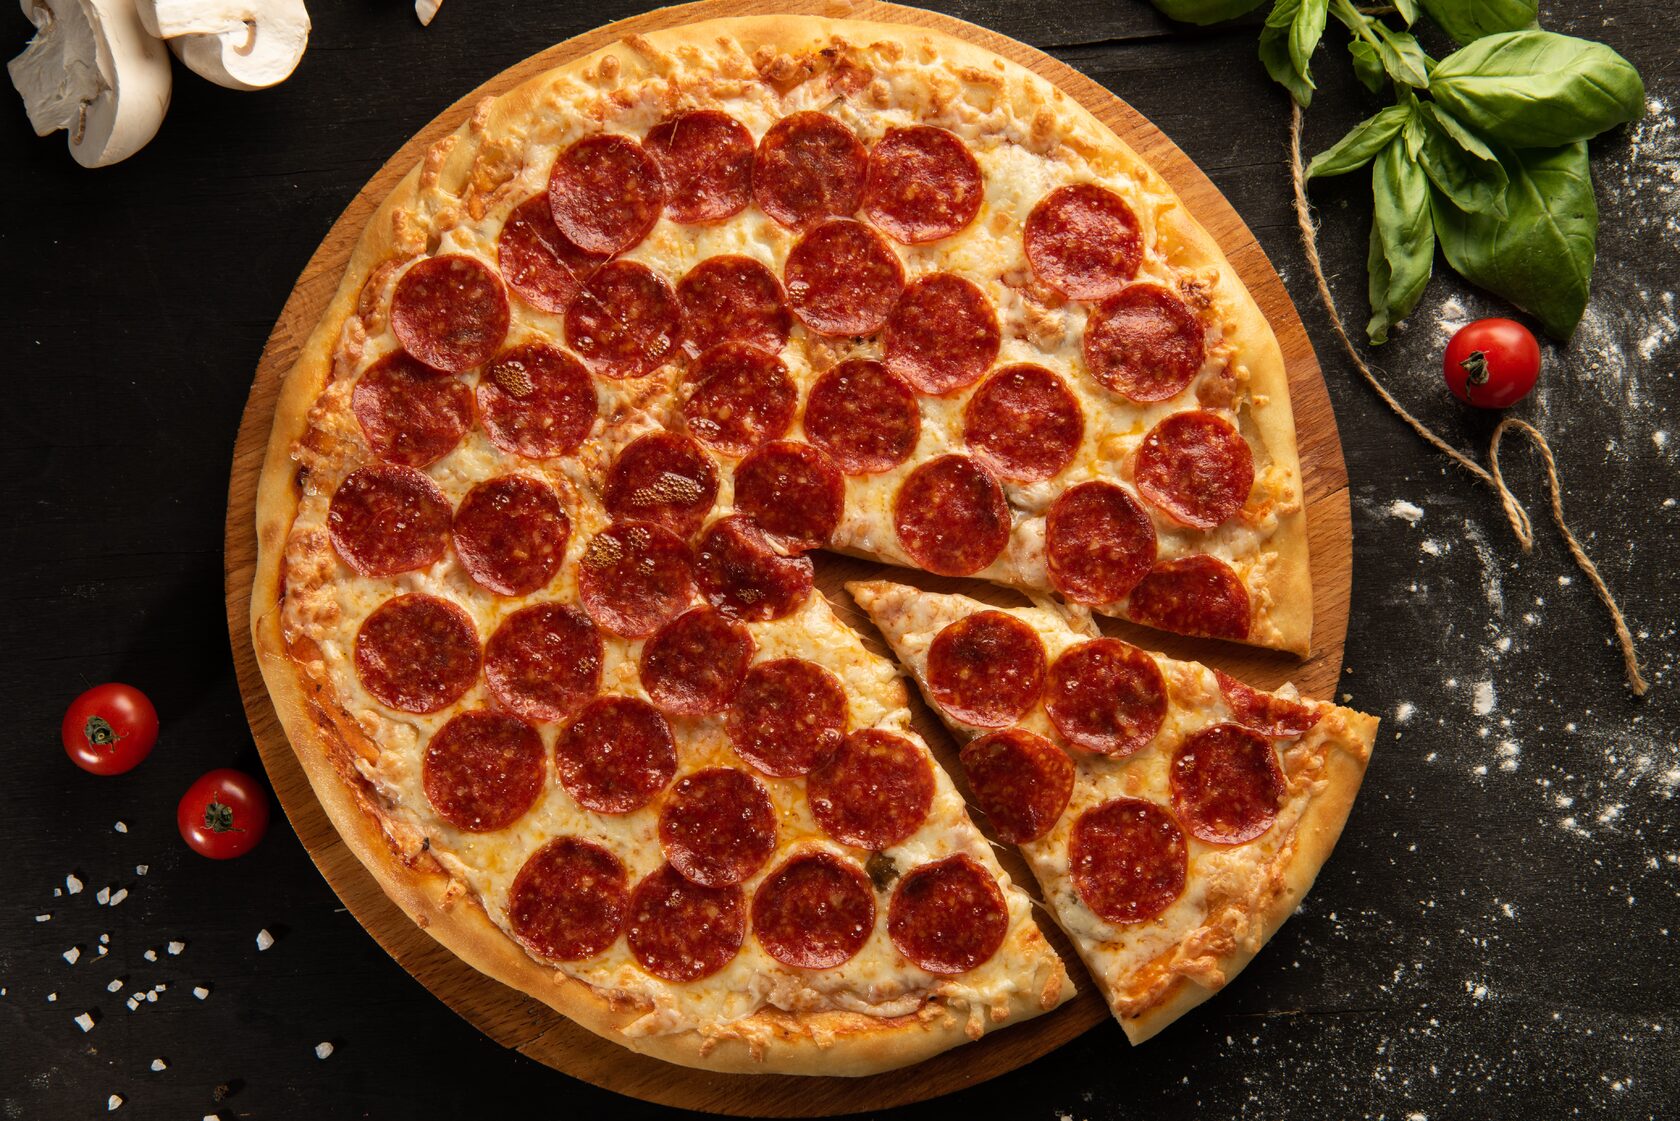 фото пепперони пицца как выглядит (120) фото